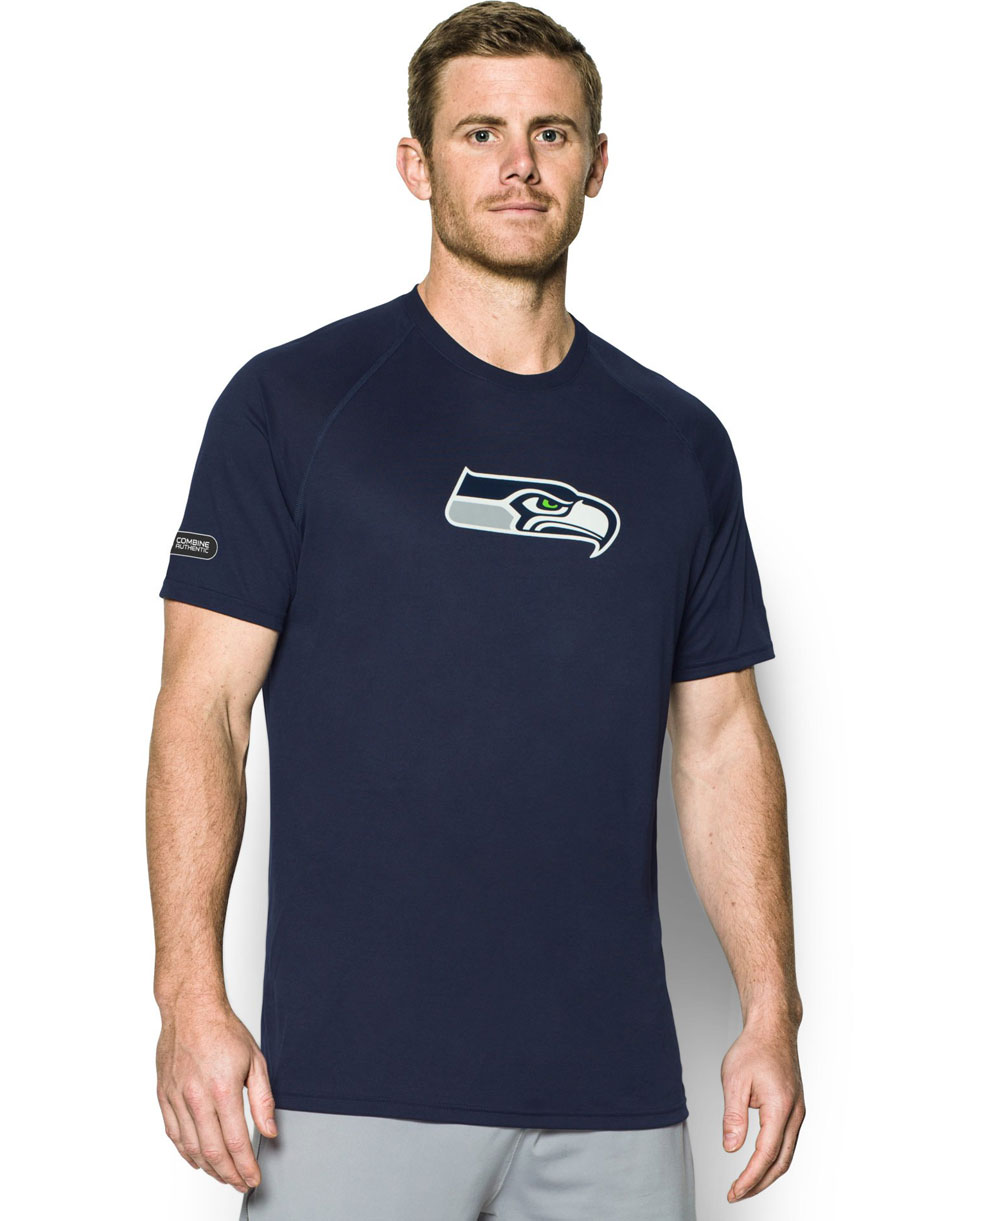 seahawks shirts on sale